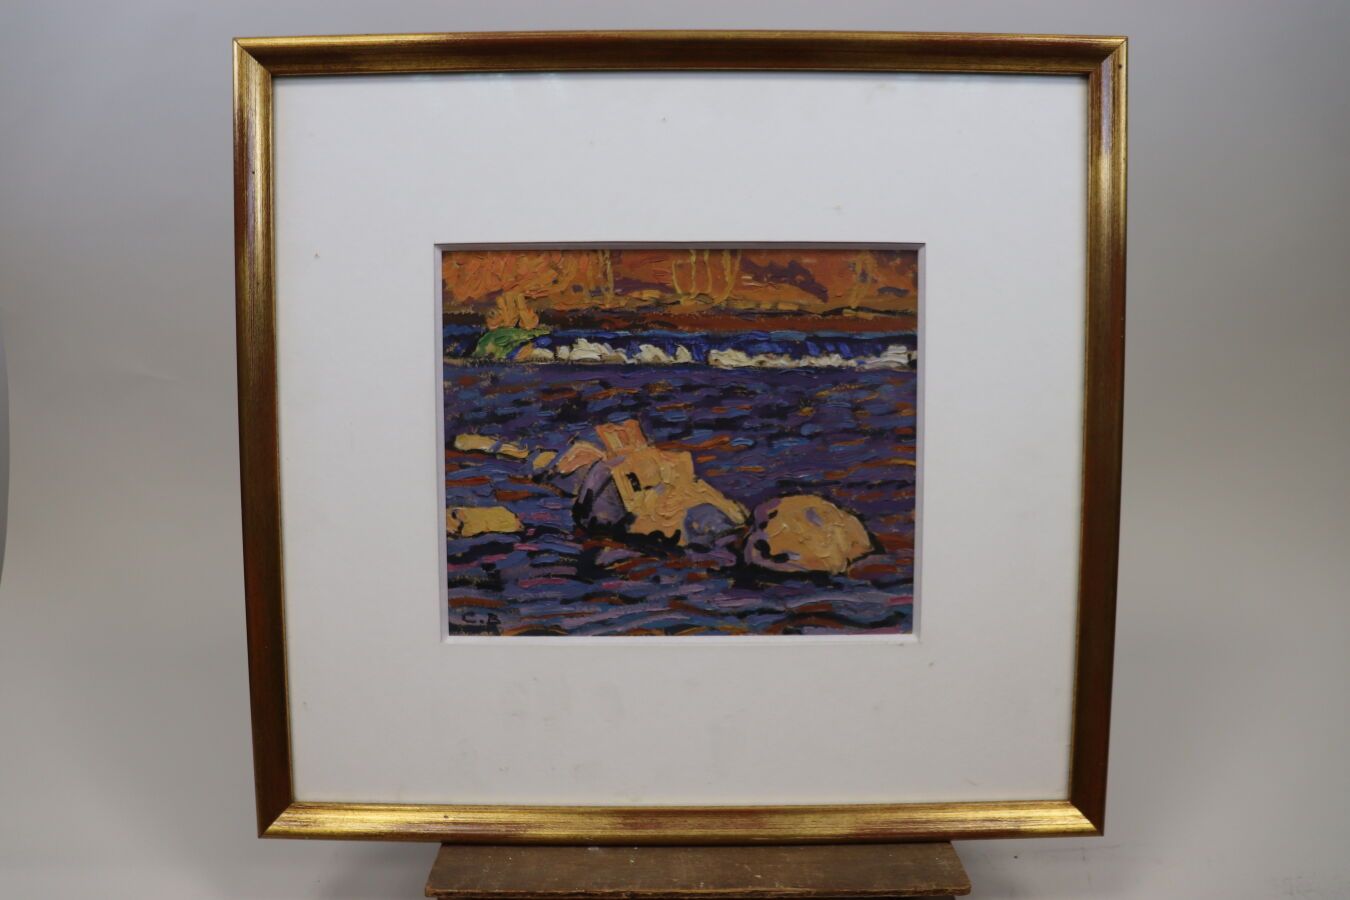 Null 比歇-夏尔-泰奥多尔（1863-1919/29）。河景纸面油画，左下方有花押。 
尺寸 20.5 x 25 厘米。 
已装裱。